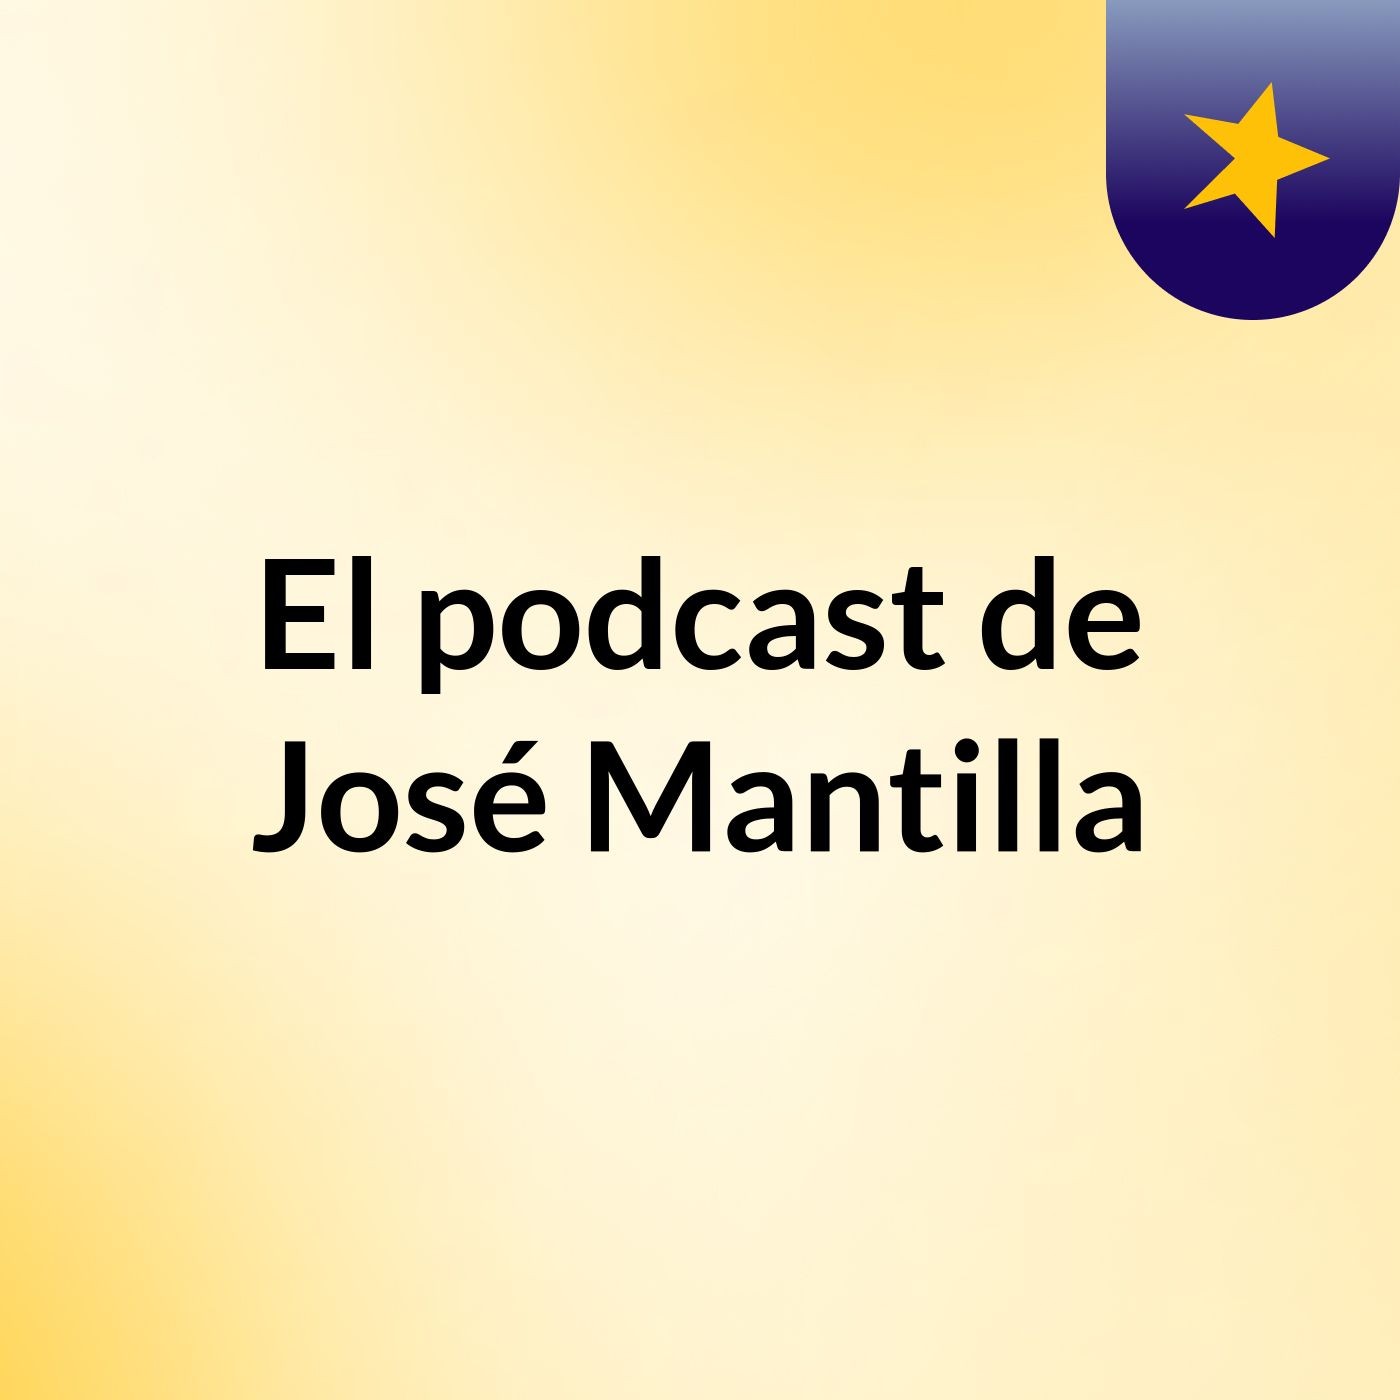 El podcast de José Mantilla